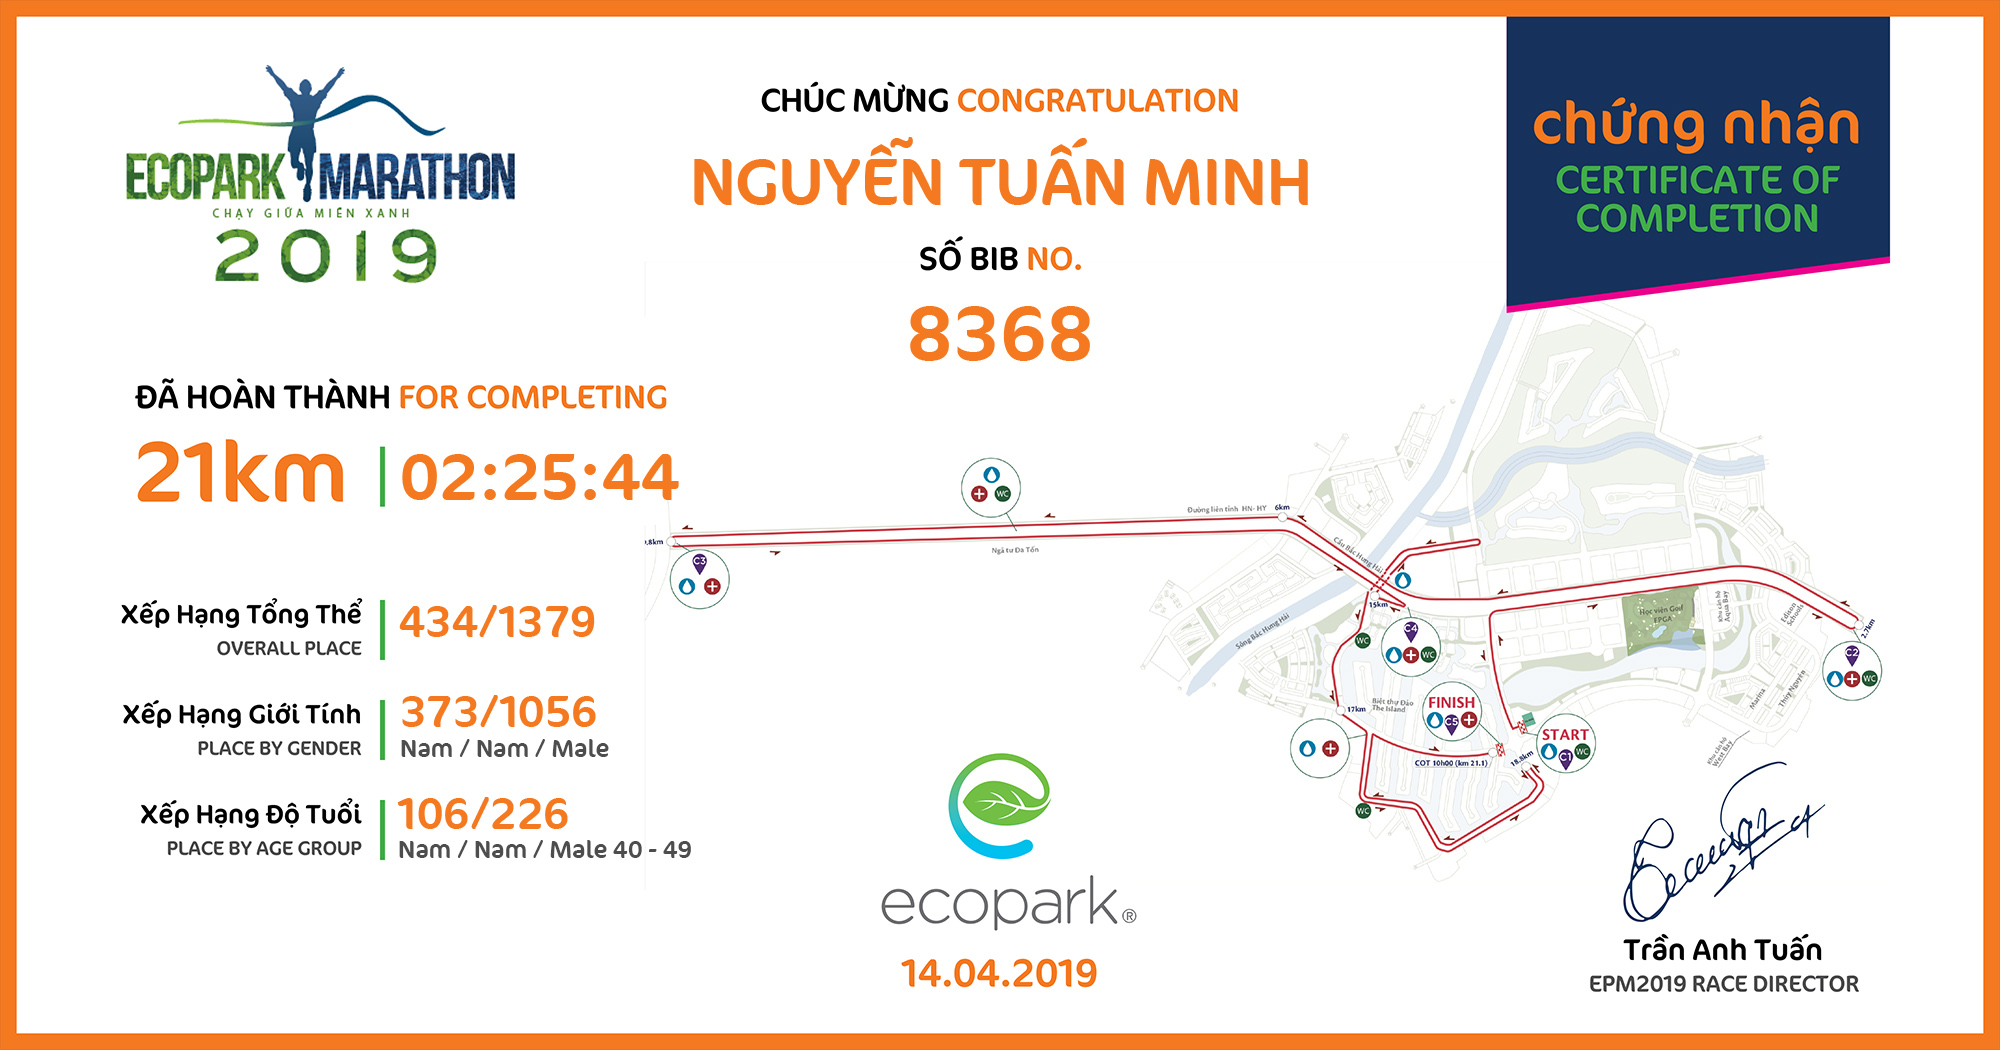 8368 - Nguyễn Tuấn Minh